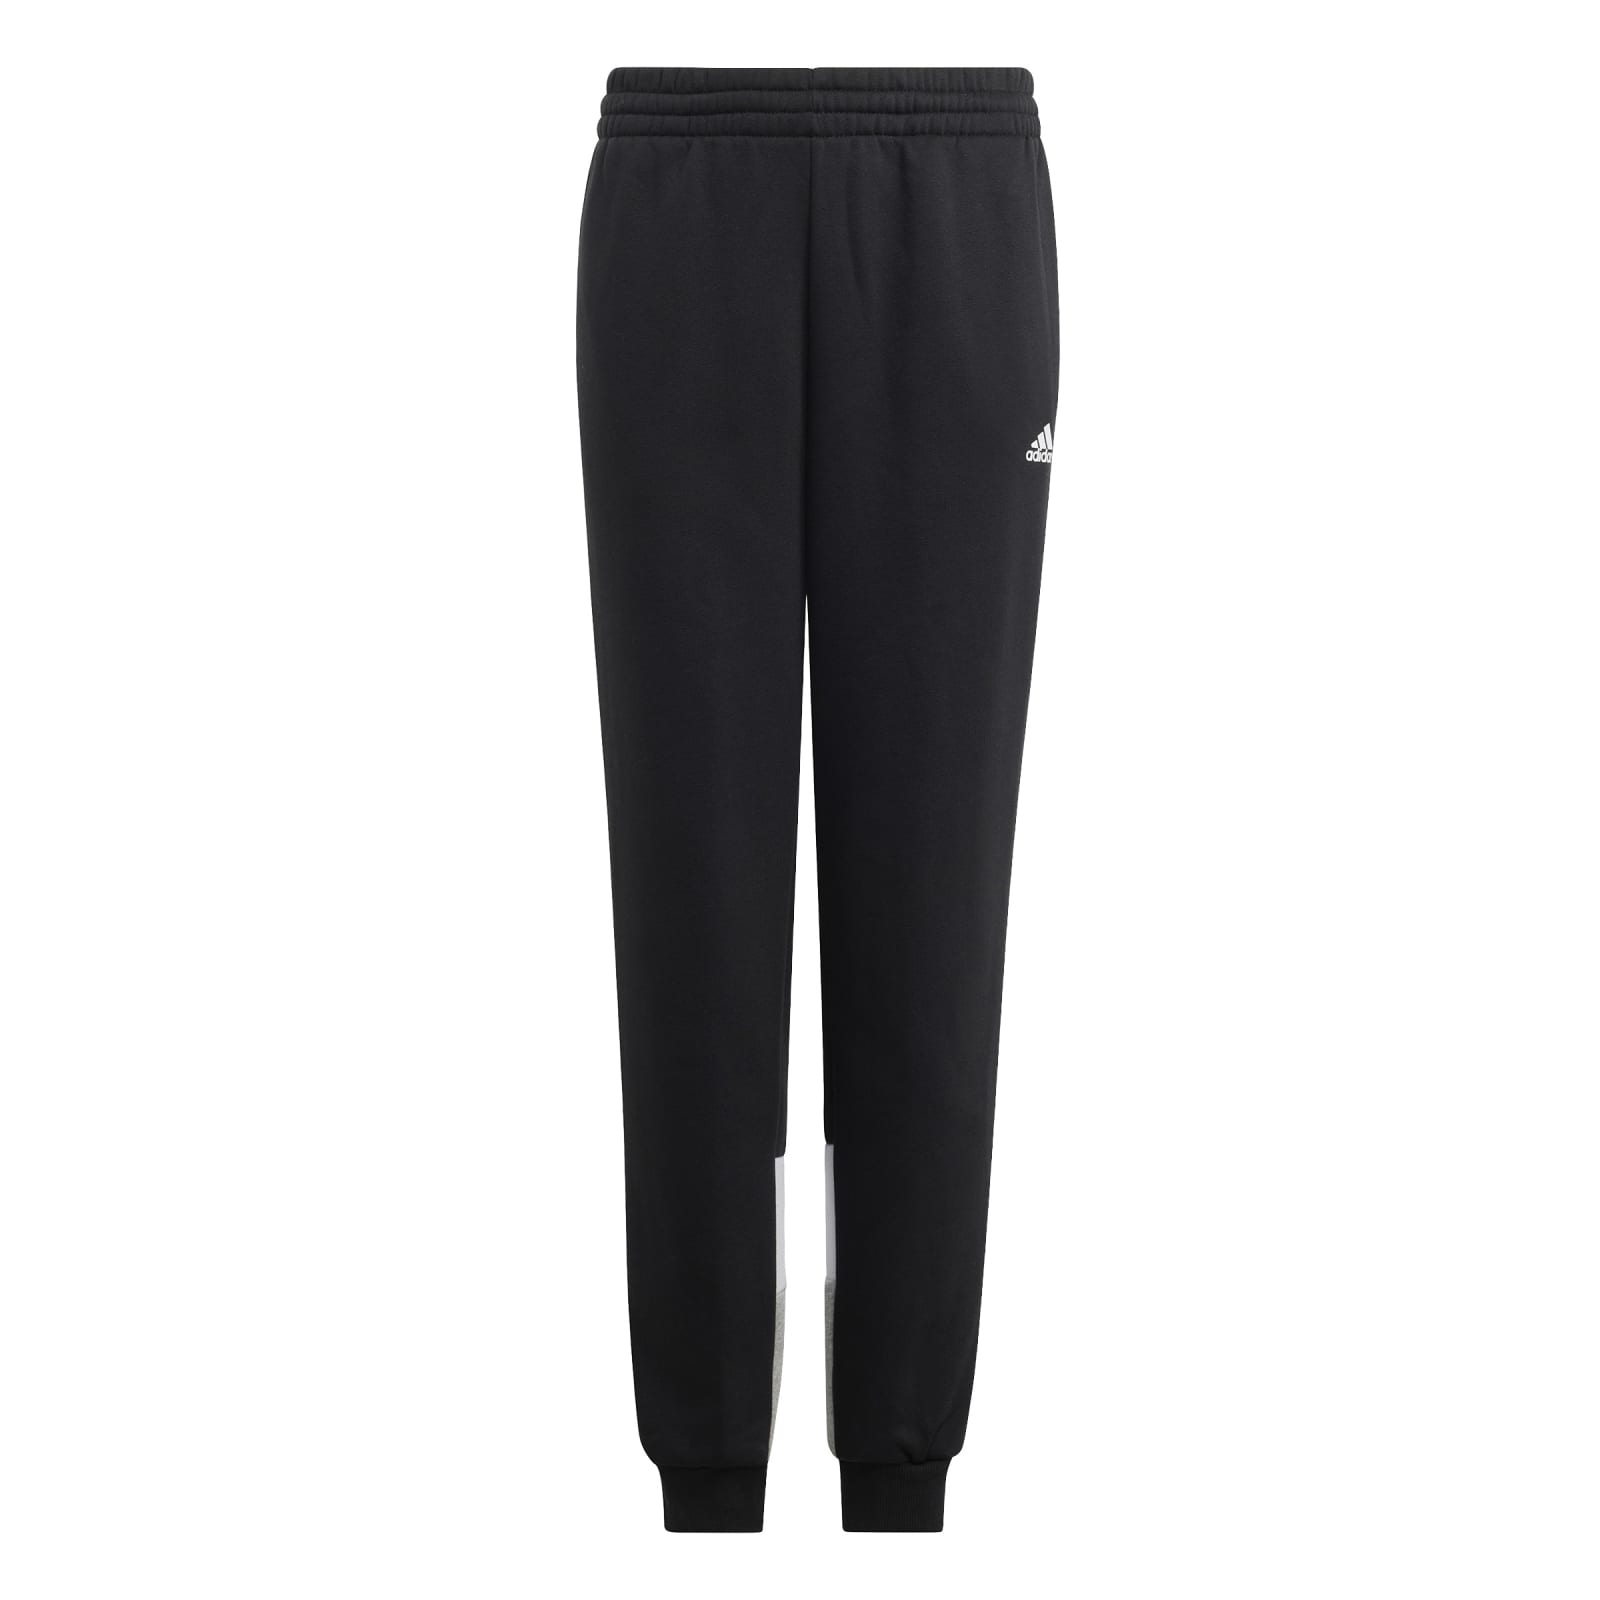 adidas Trainingsanzug bestellen (Baumwollmix) Colourblock schwarz/grau Jungen Fleece online